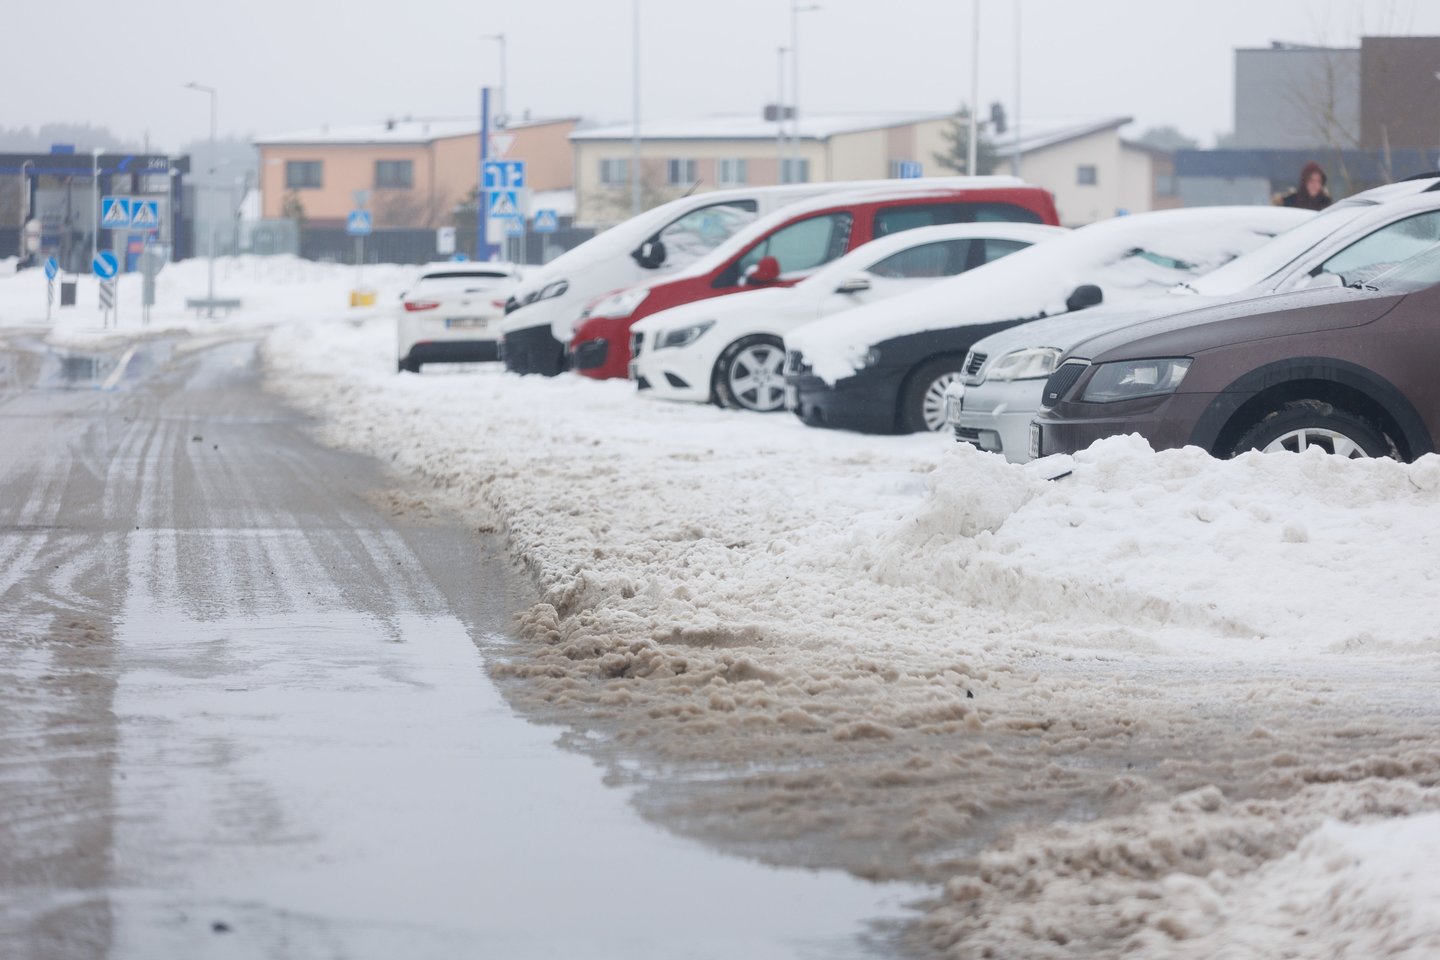 Vilniaus savivaldybės atstovai pažymėjo, kad žiemos darbai nėra vien tik sniego valymas, pėsčiųjų takų ar važiuojamosios kelio dalies barstymas.<br>T.Bauro nuotr.